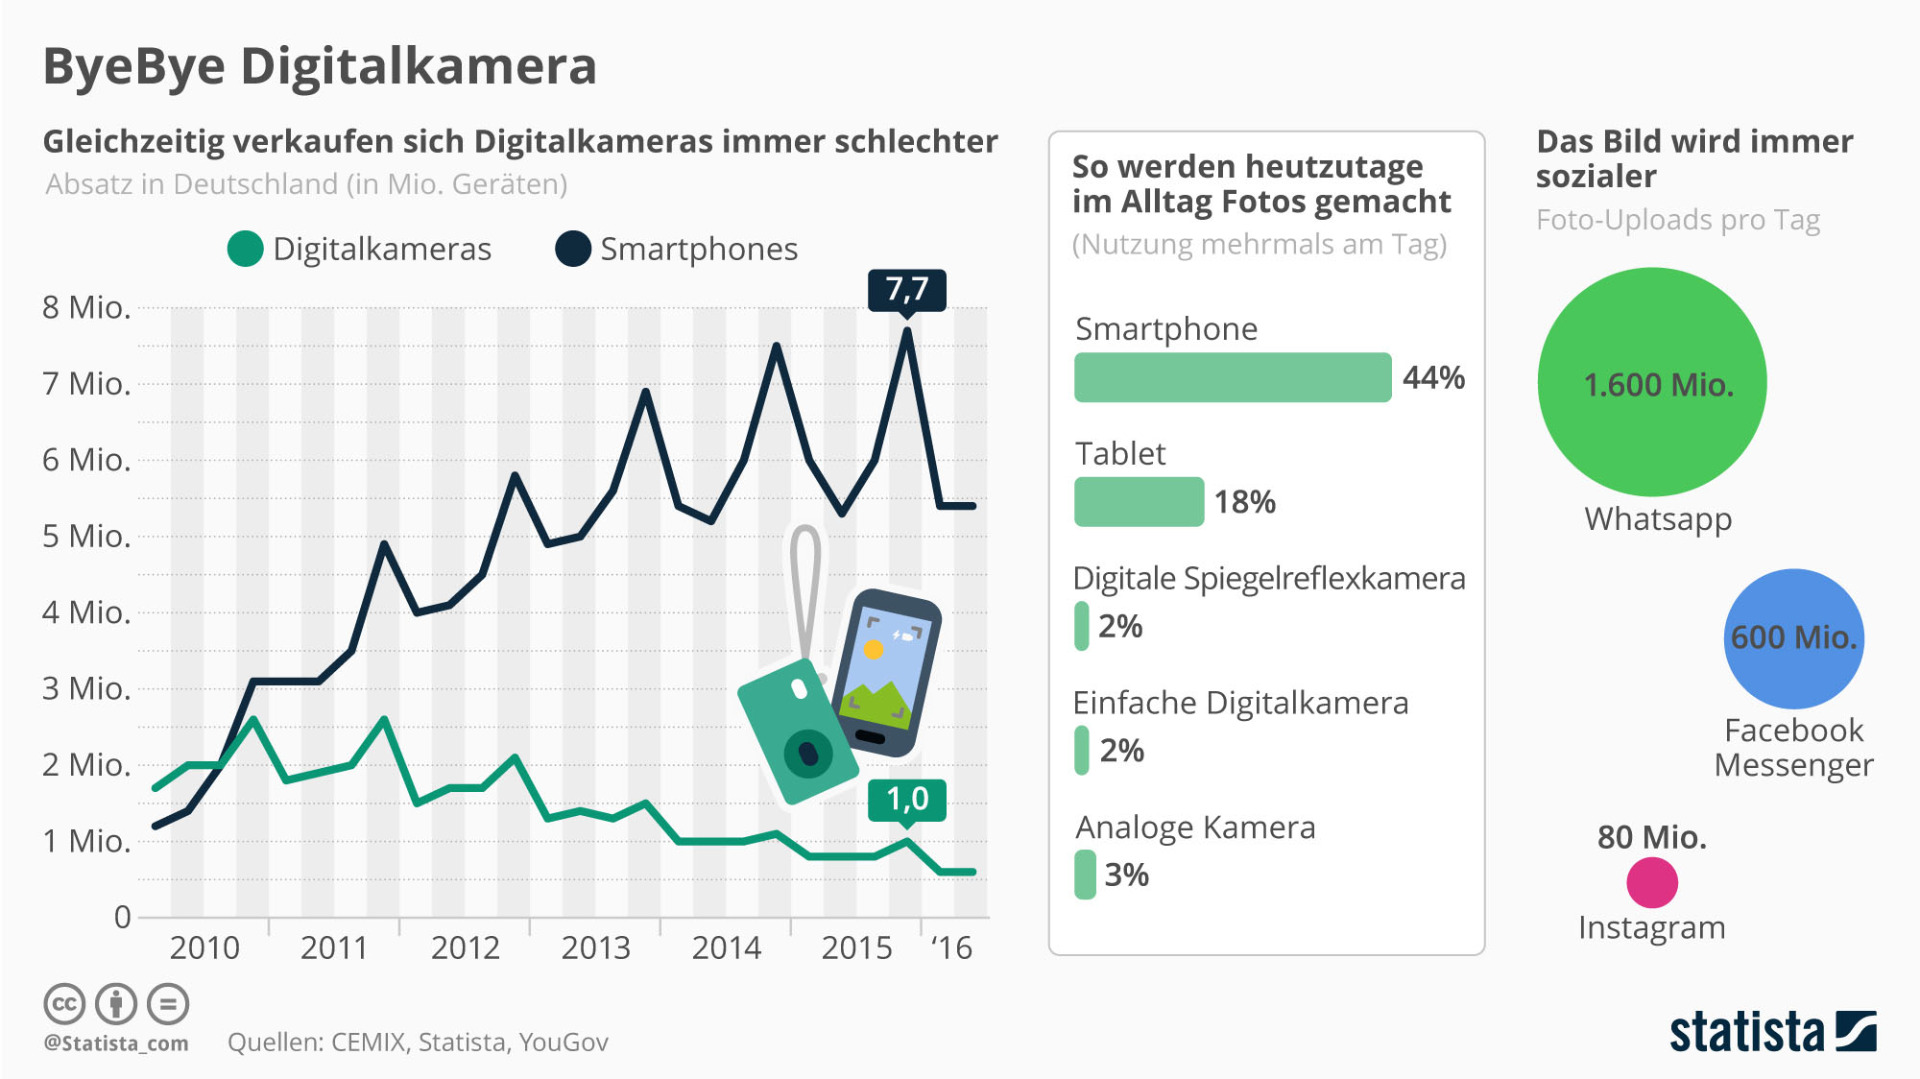 Statistik über Verkaufszahlen von Digitalkameras und Smartphones